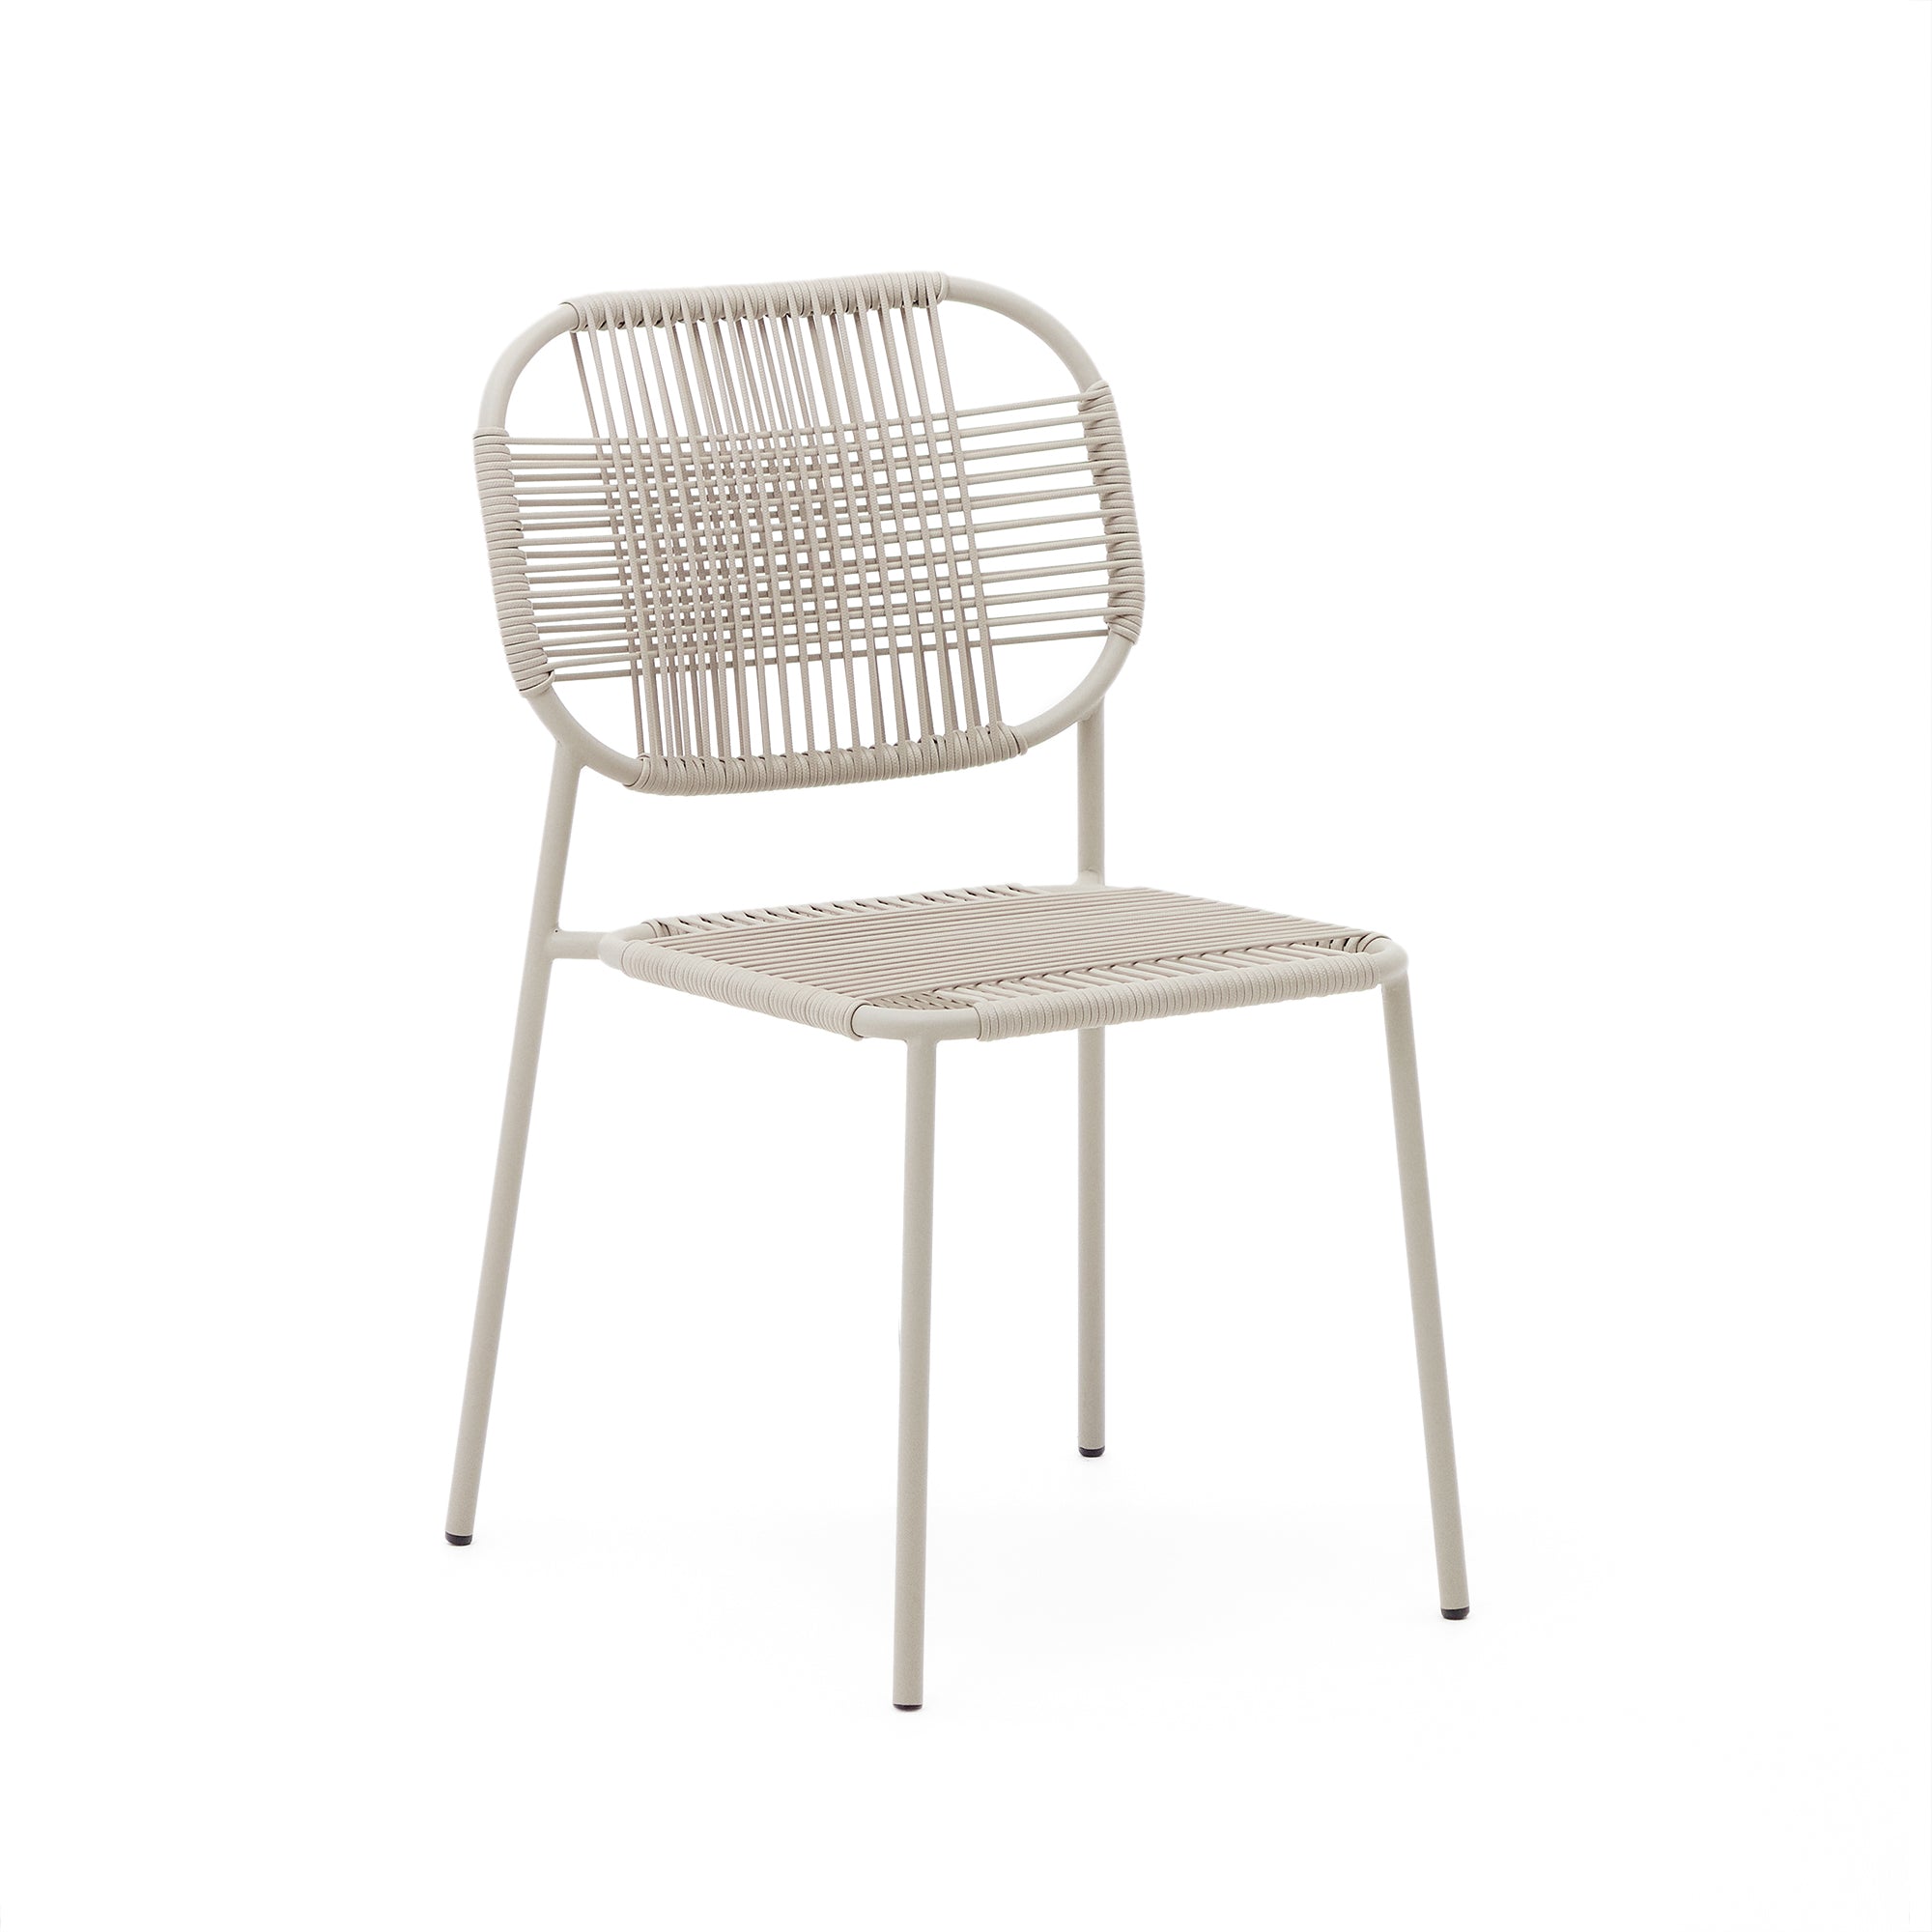 Talaier összecsukható kültéri szék szintetikus kötélből és galvanizált acélból bézs színben